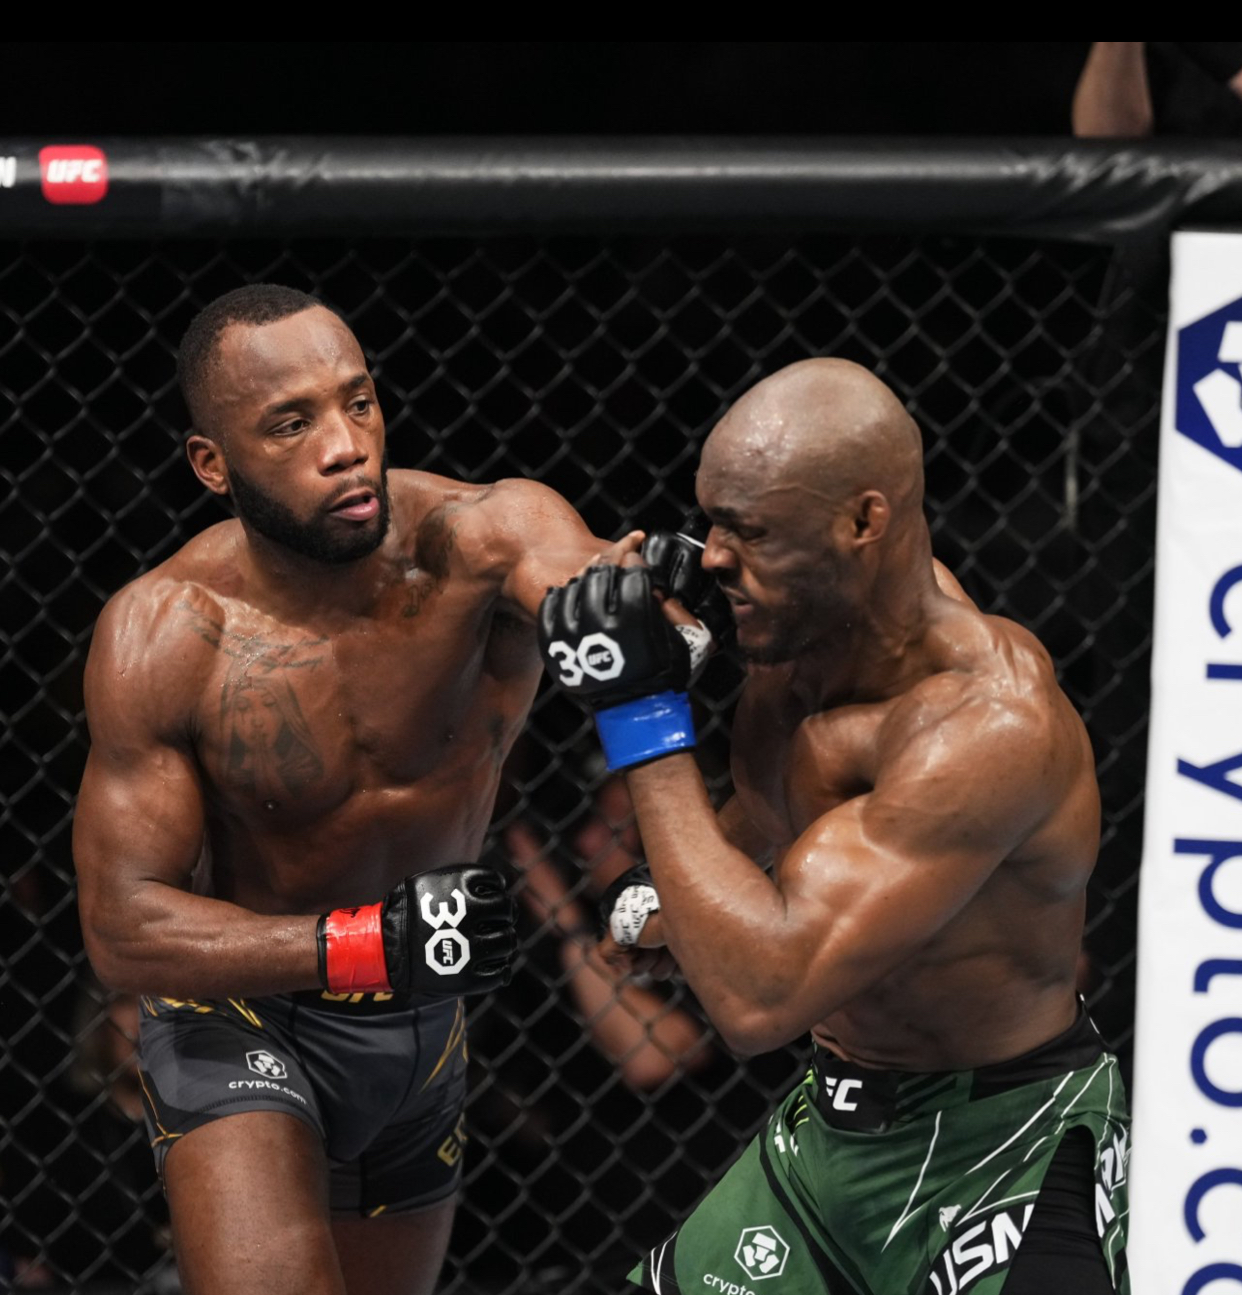 UFC: Edwards vence Usman novamente e mantém o título dos meio-médios